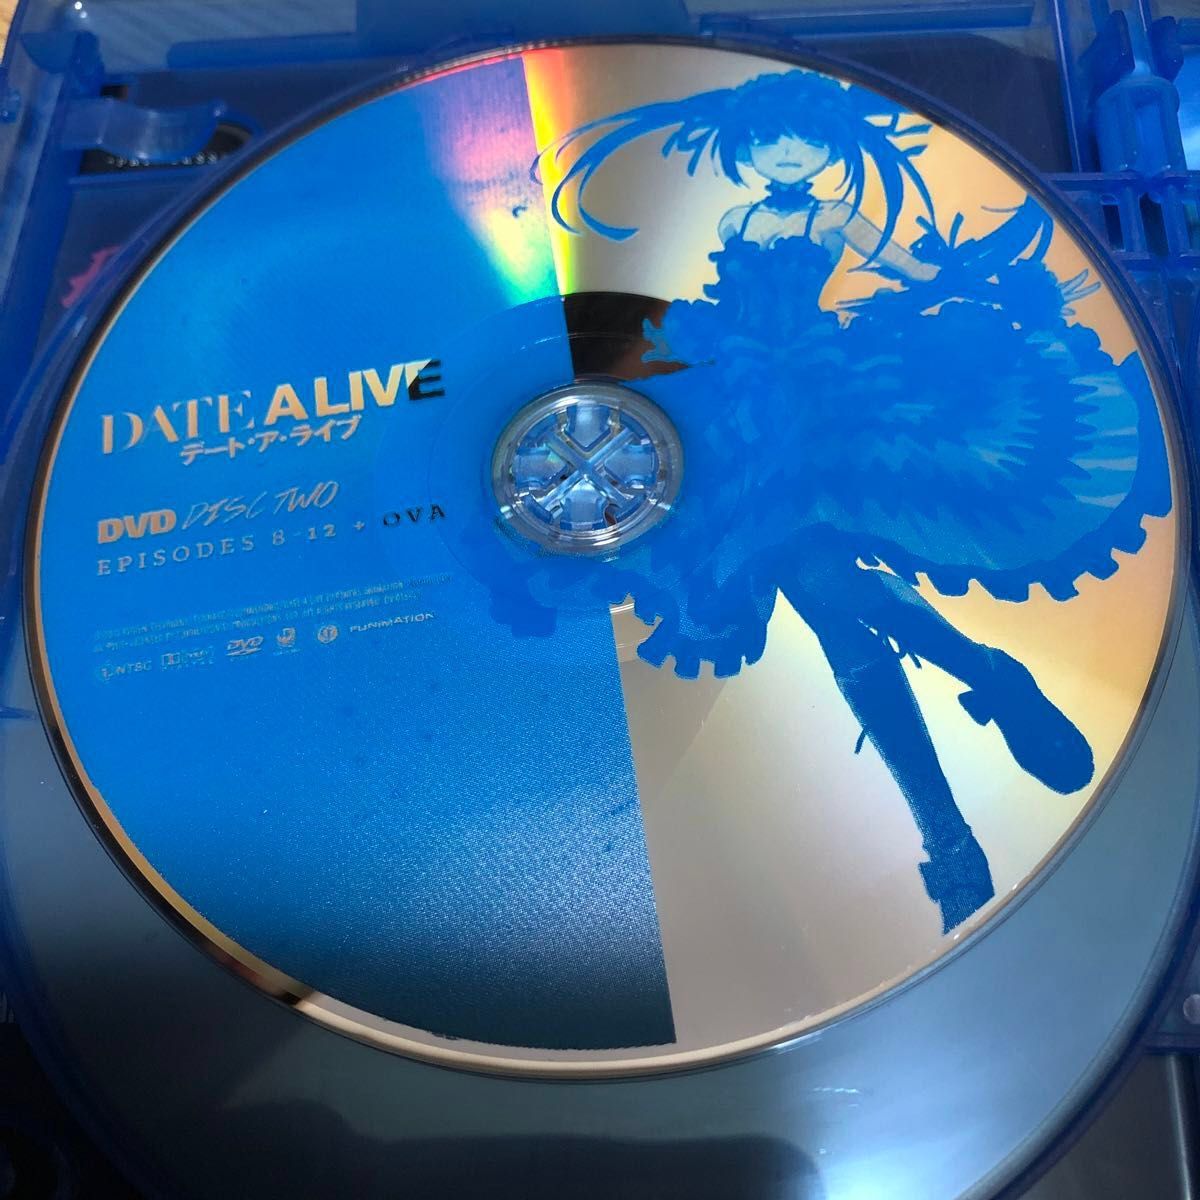 デート・ア・ライブ Date a Live: Season One - S.a.V.E. [Blu-ray] [北米版] 